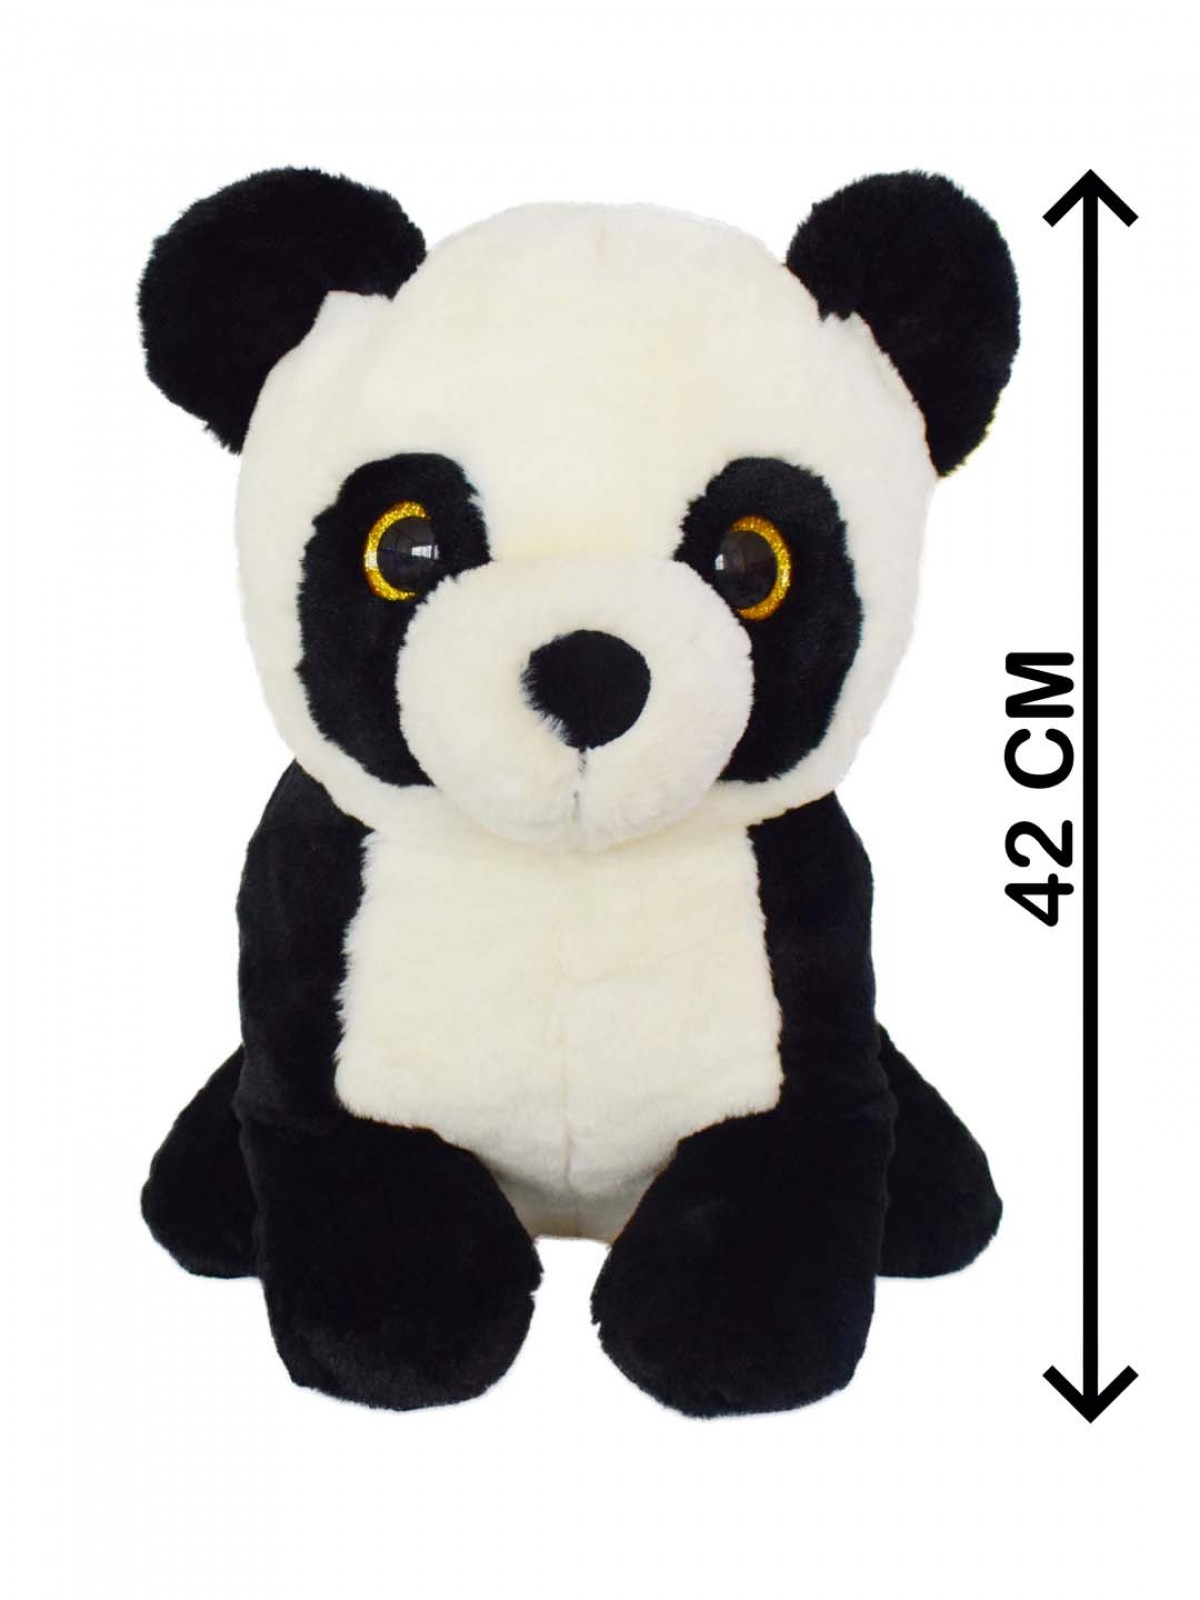 Cute Stuffed Supersoft Plush Panda Soft Toy By Mirada, 42Cm, Black